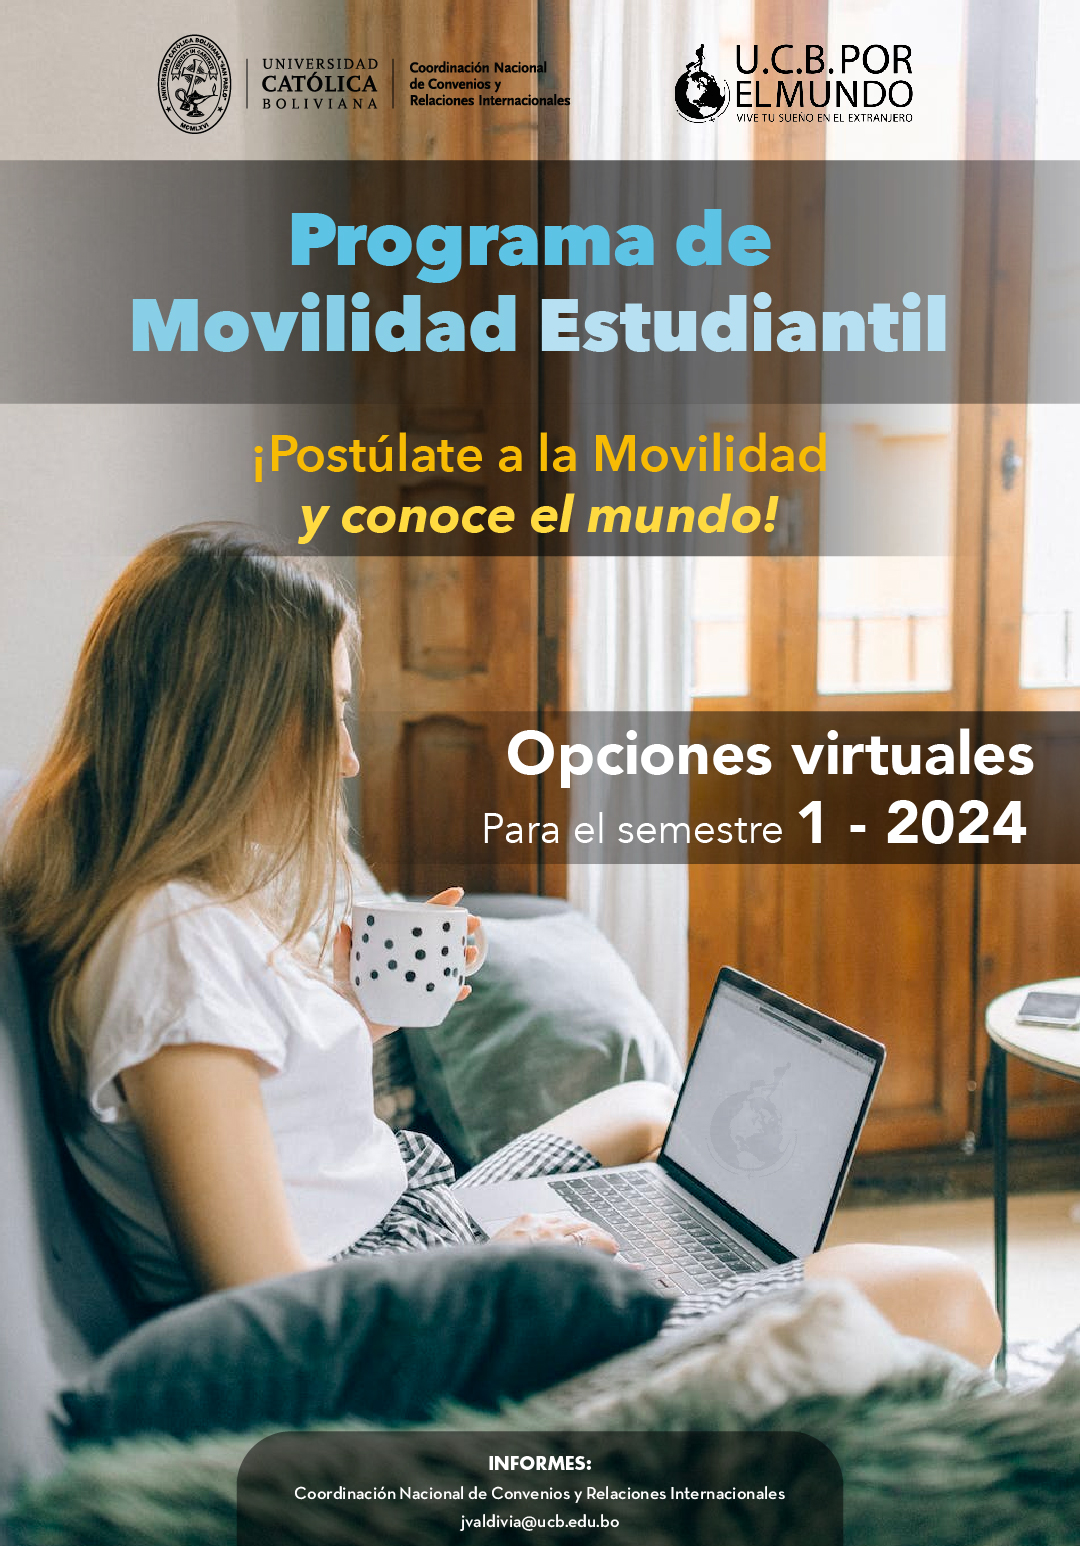 ¡El Programa Virtual de Movilidad Estudiantil UCB por el Mundo esta con la convocatoria abierta para el 1-2024!